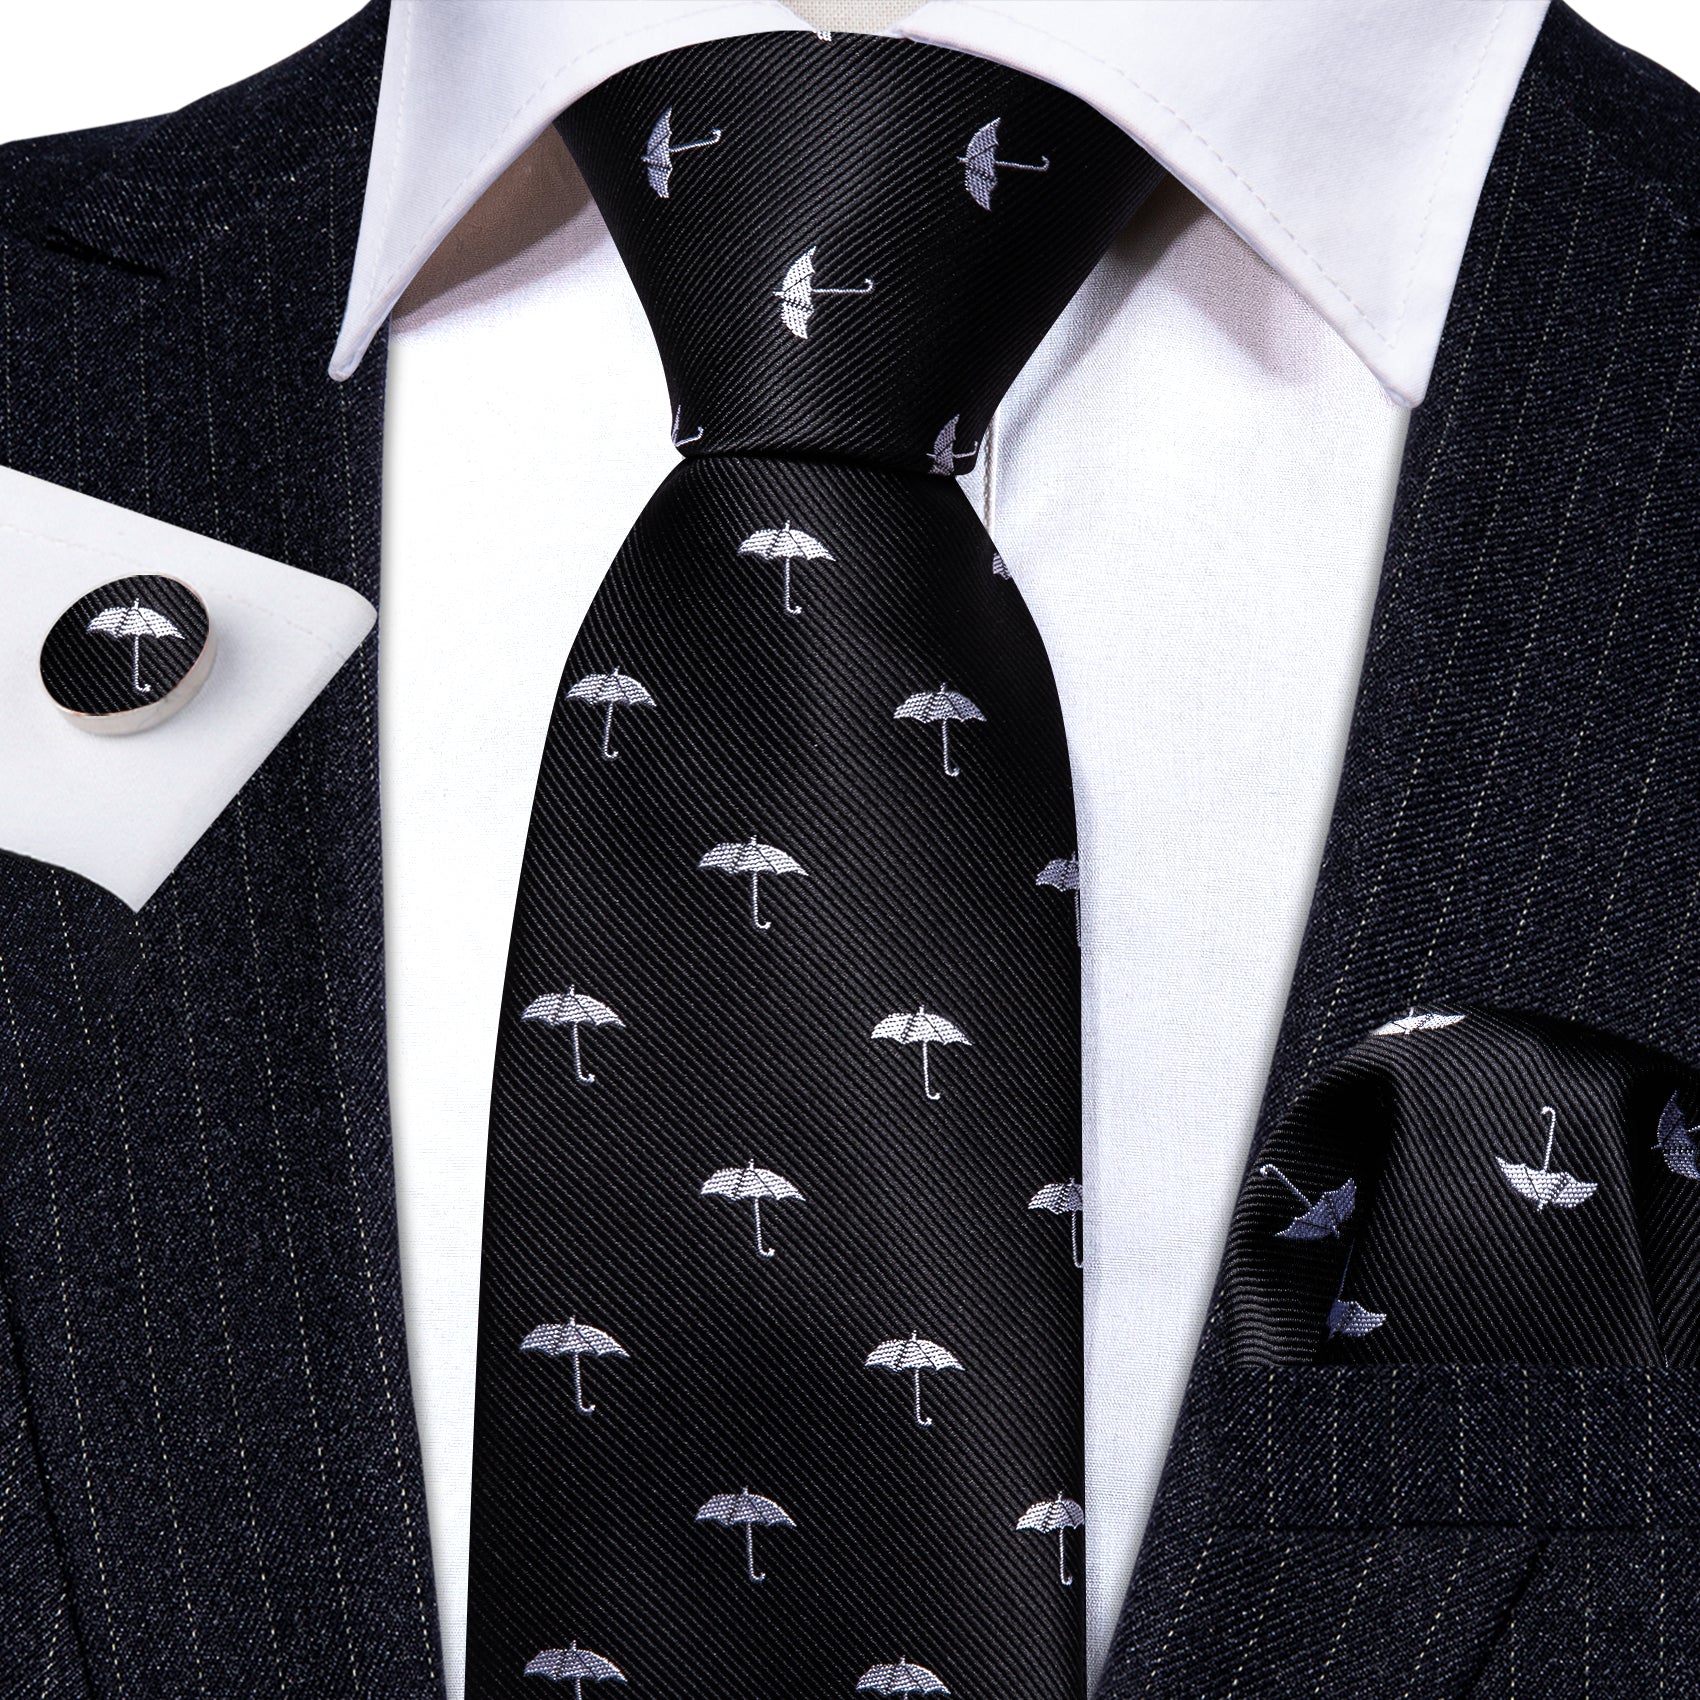 Black White Umbrella Silk Tie Handkerchief Cufflinks Set